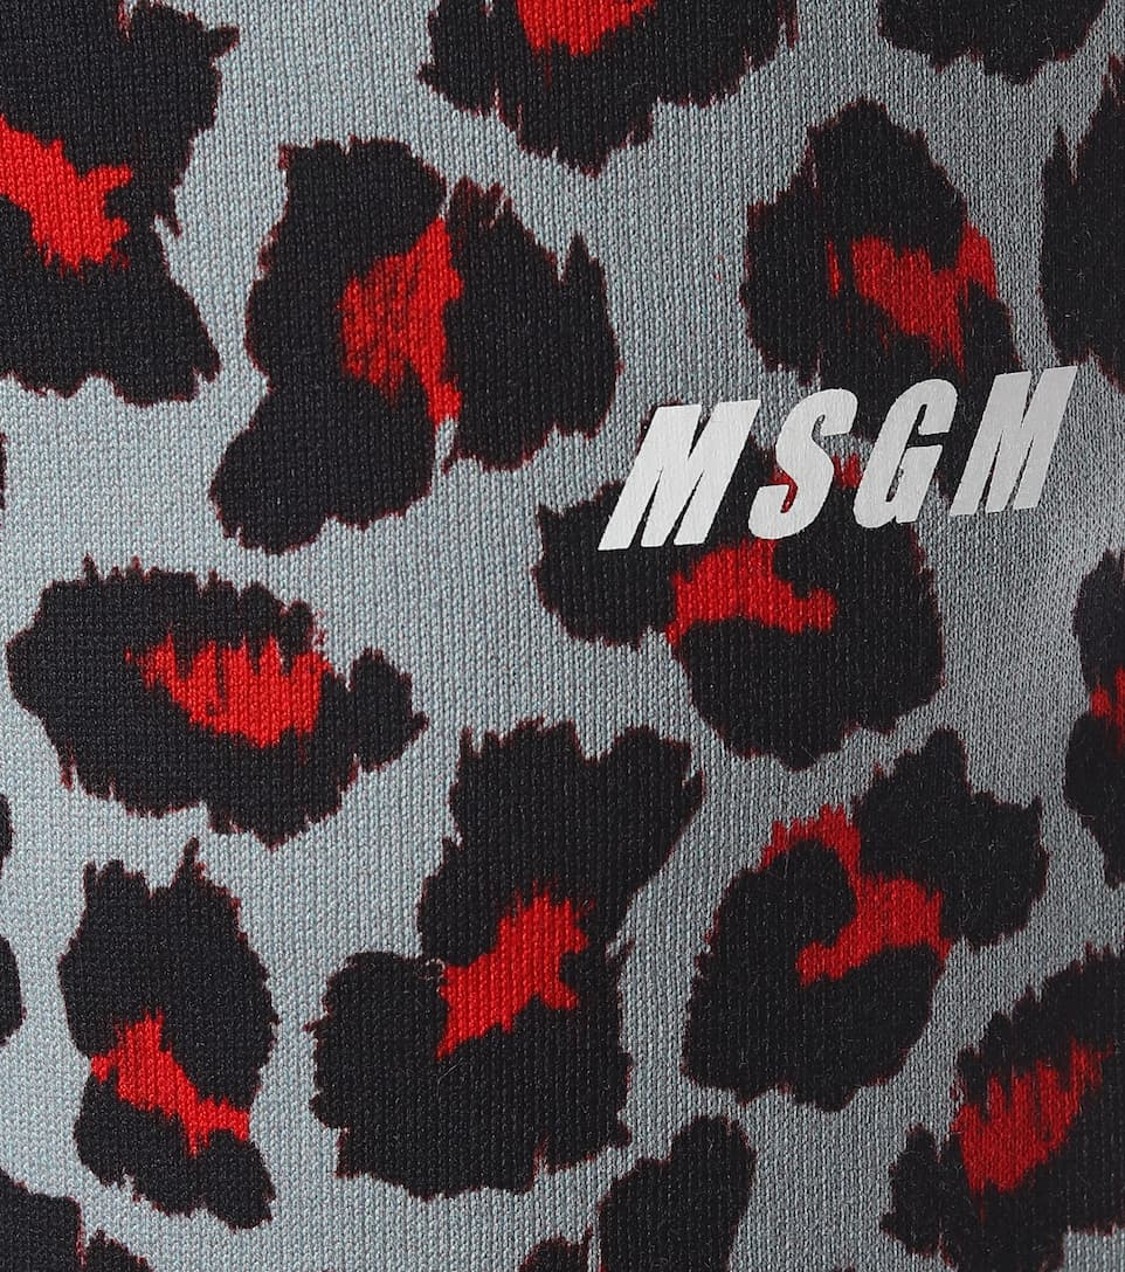 shop MSGM Saldi Pantaloni: Pantalone MSGM, in stampa leopardata, chiuso infondo con polsino nero, coulisse in vita, in cotone, fit morbido, tasche laterali.

Composizione: 100% cotone. number 1511